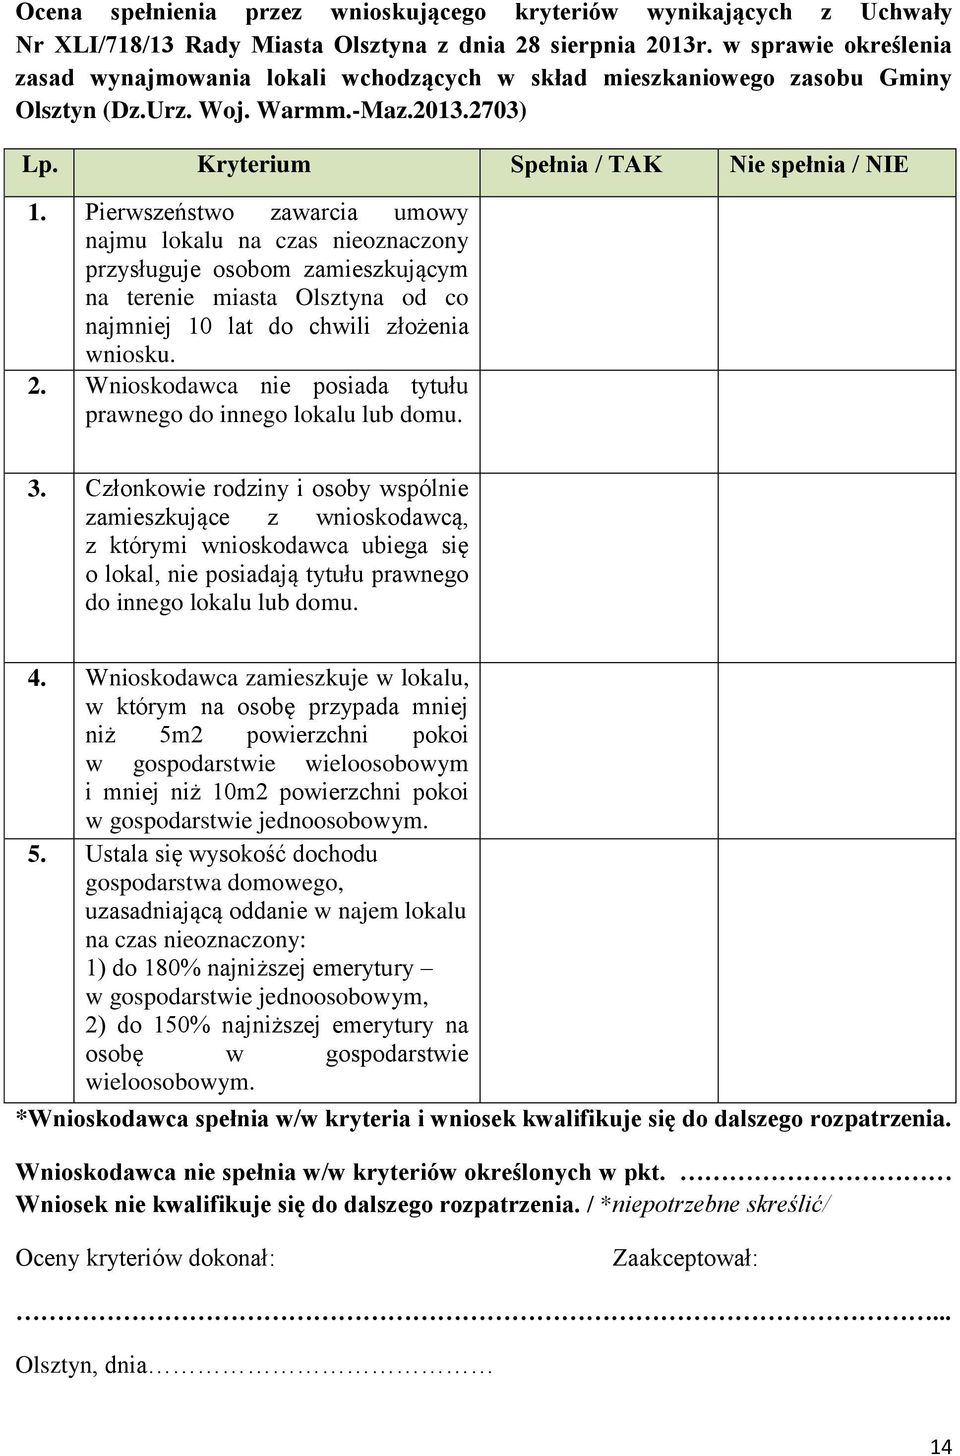 Pierwszeństwo zawarcia umowy najmu lokalu na czas nieoznaczony przysługuje osobom zamieszkującym na terenie miasta Olsztyna od co najmniej 10 lat do chwili złożenia wniosku. 2.